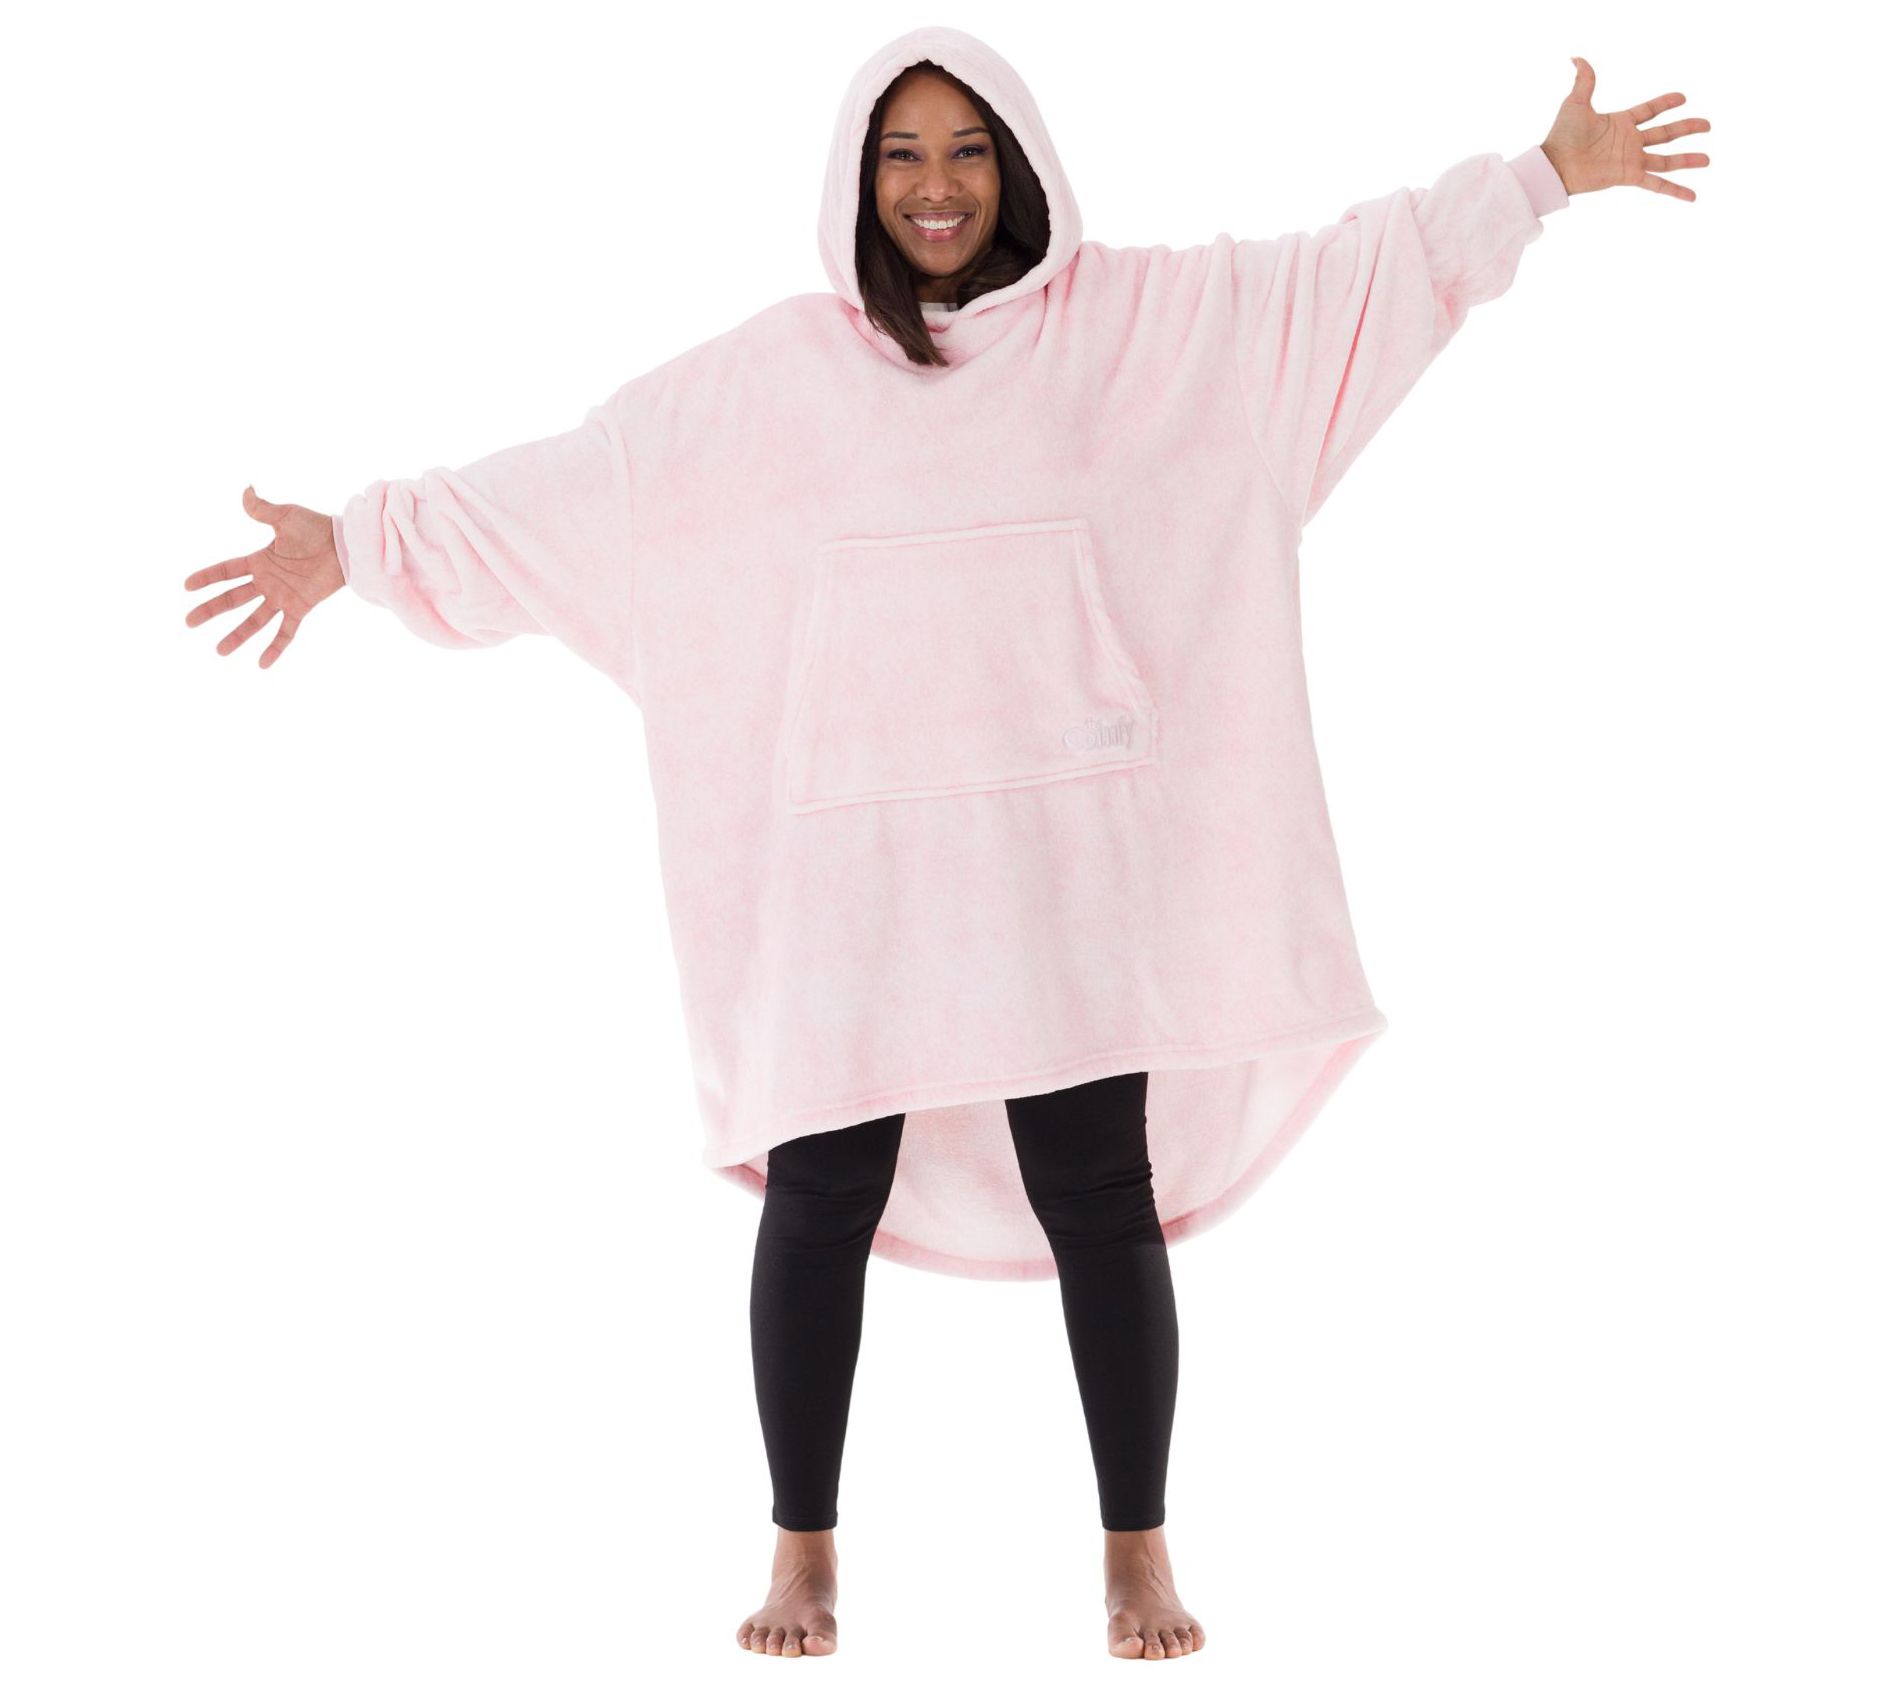 The Comfy Blanket Hoodies  For Men, Women & Kids 